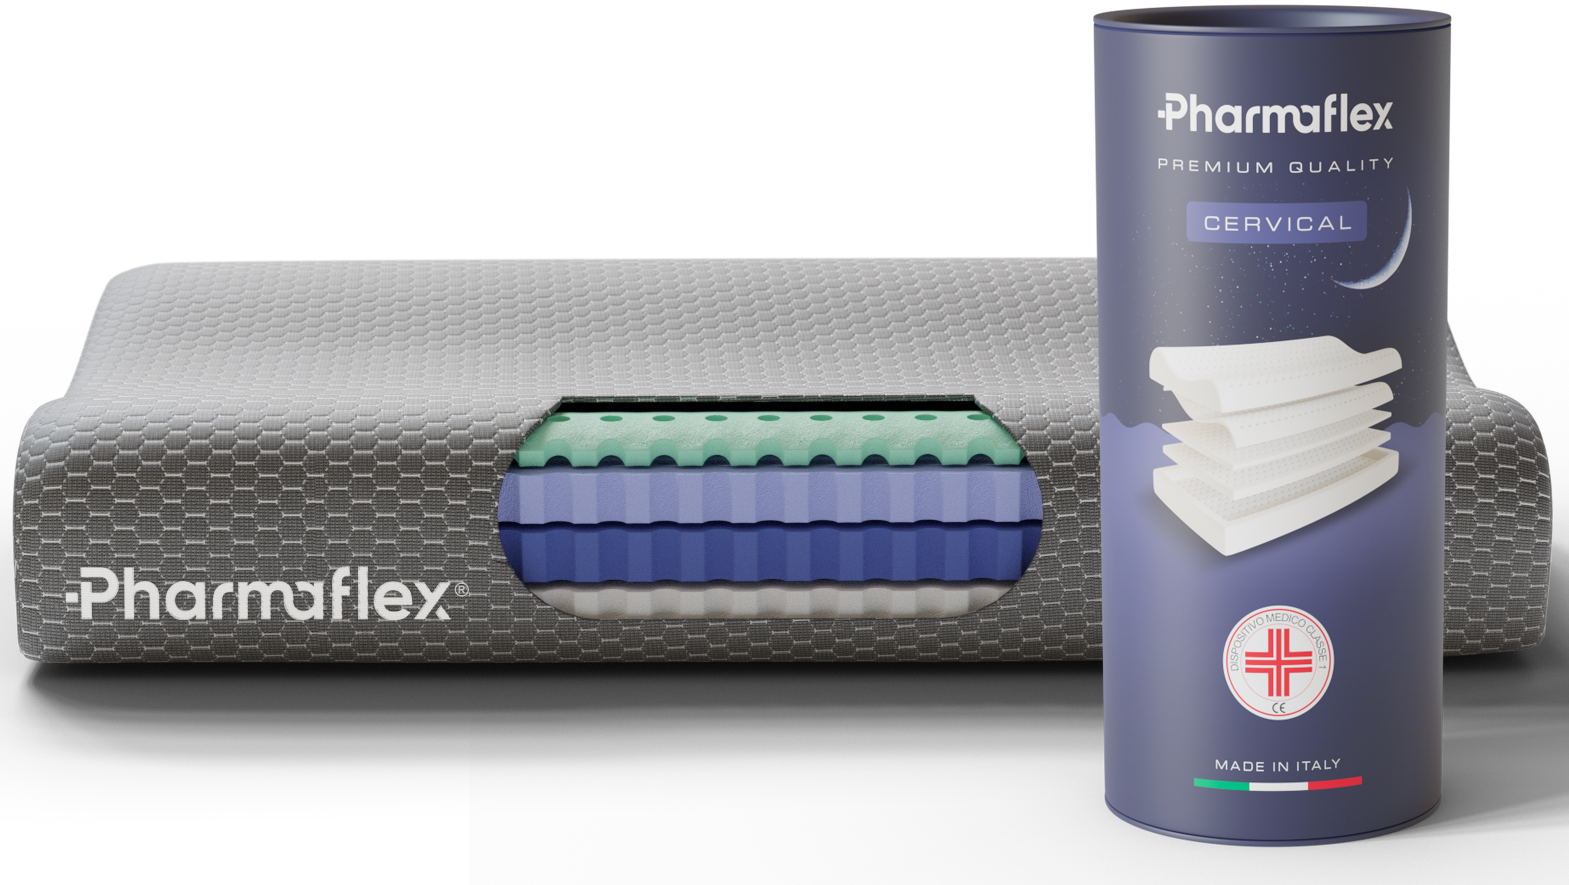  Pharmaflex Cervical, Il Miglior Cuscino Ortopedico Per La  Cervicale